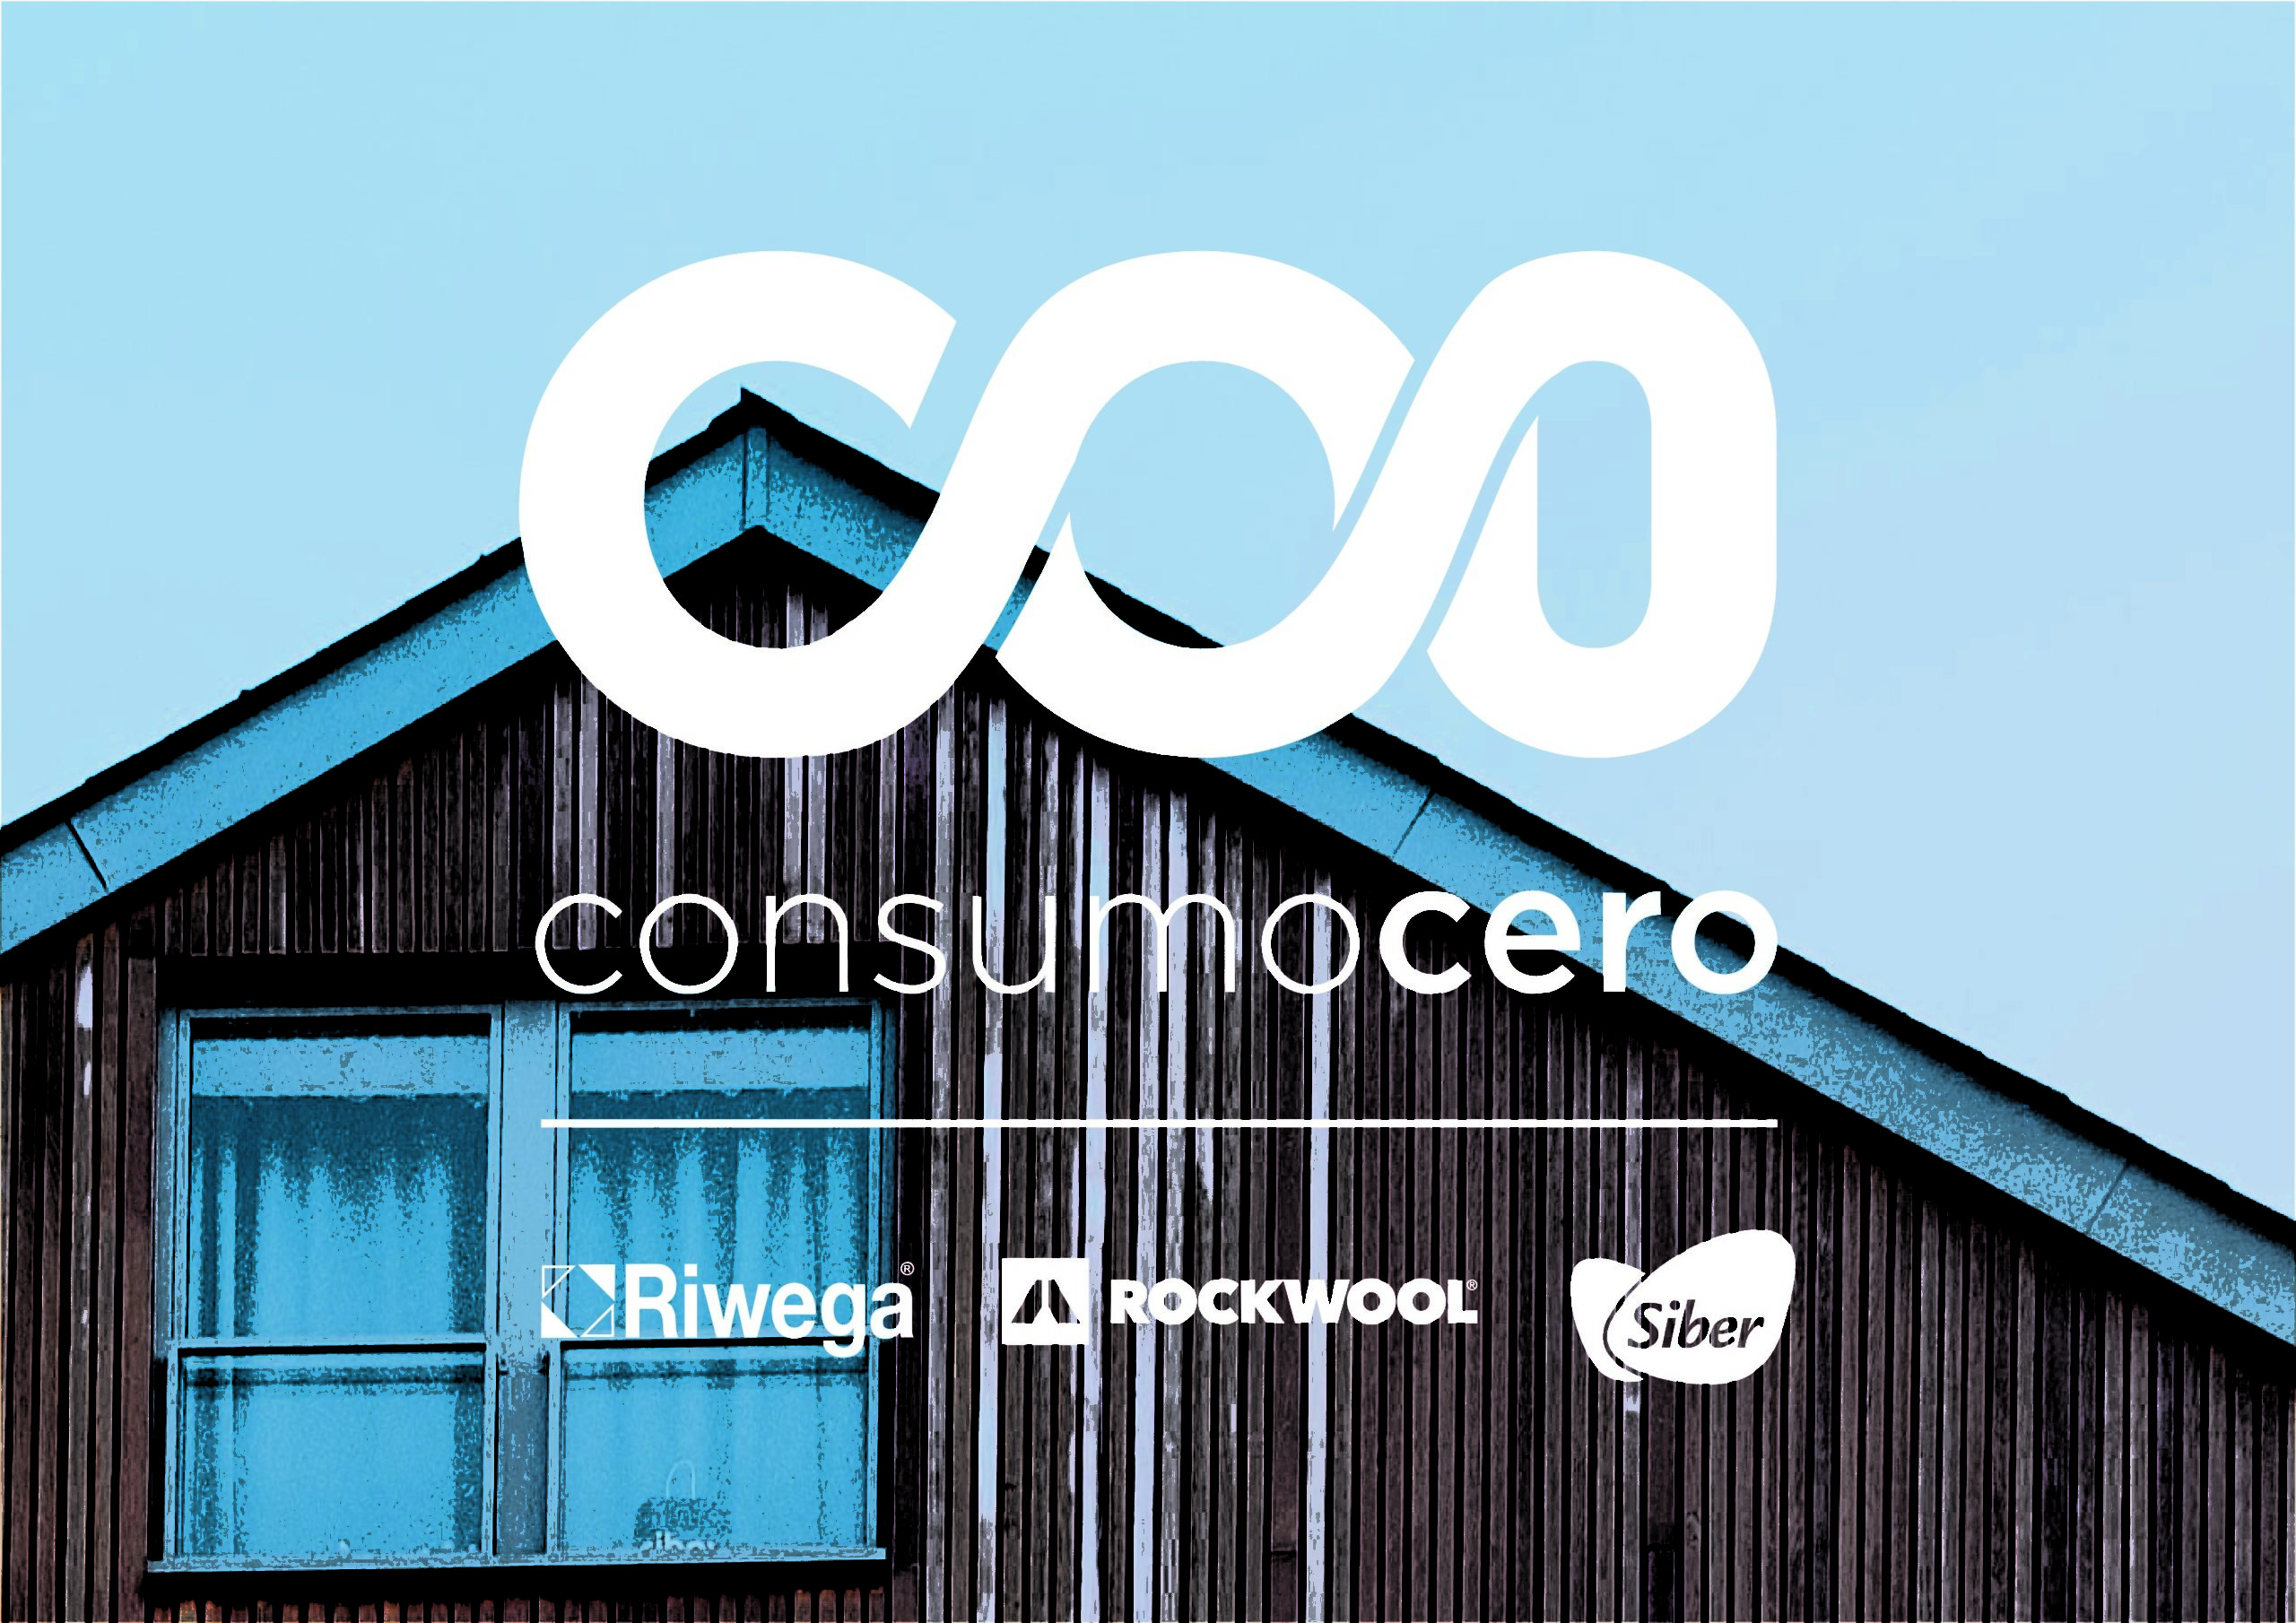 ROCKWOOL, Riwega y Siber se unen para promover edificios de Consumo Energético Casi Nulo